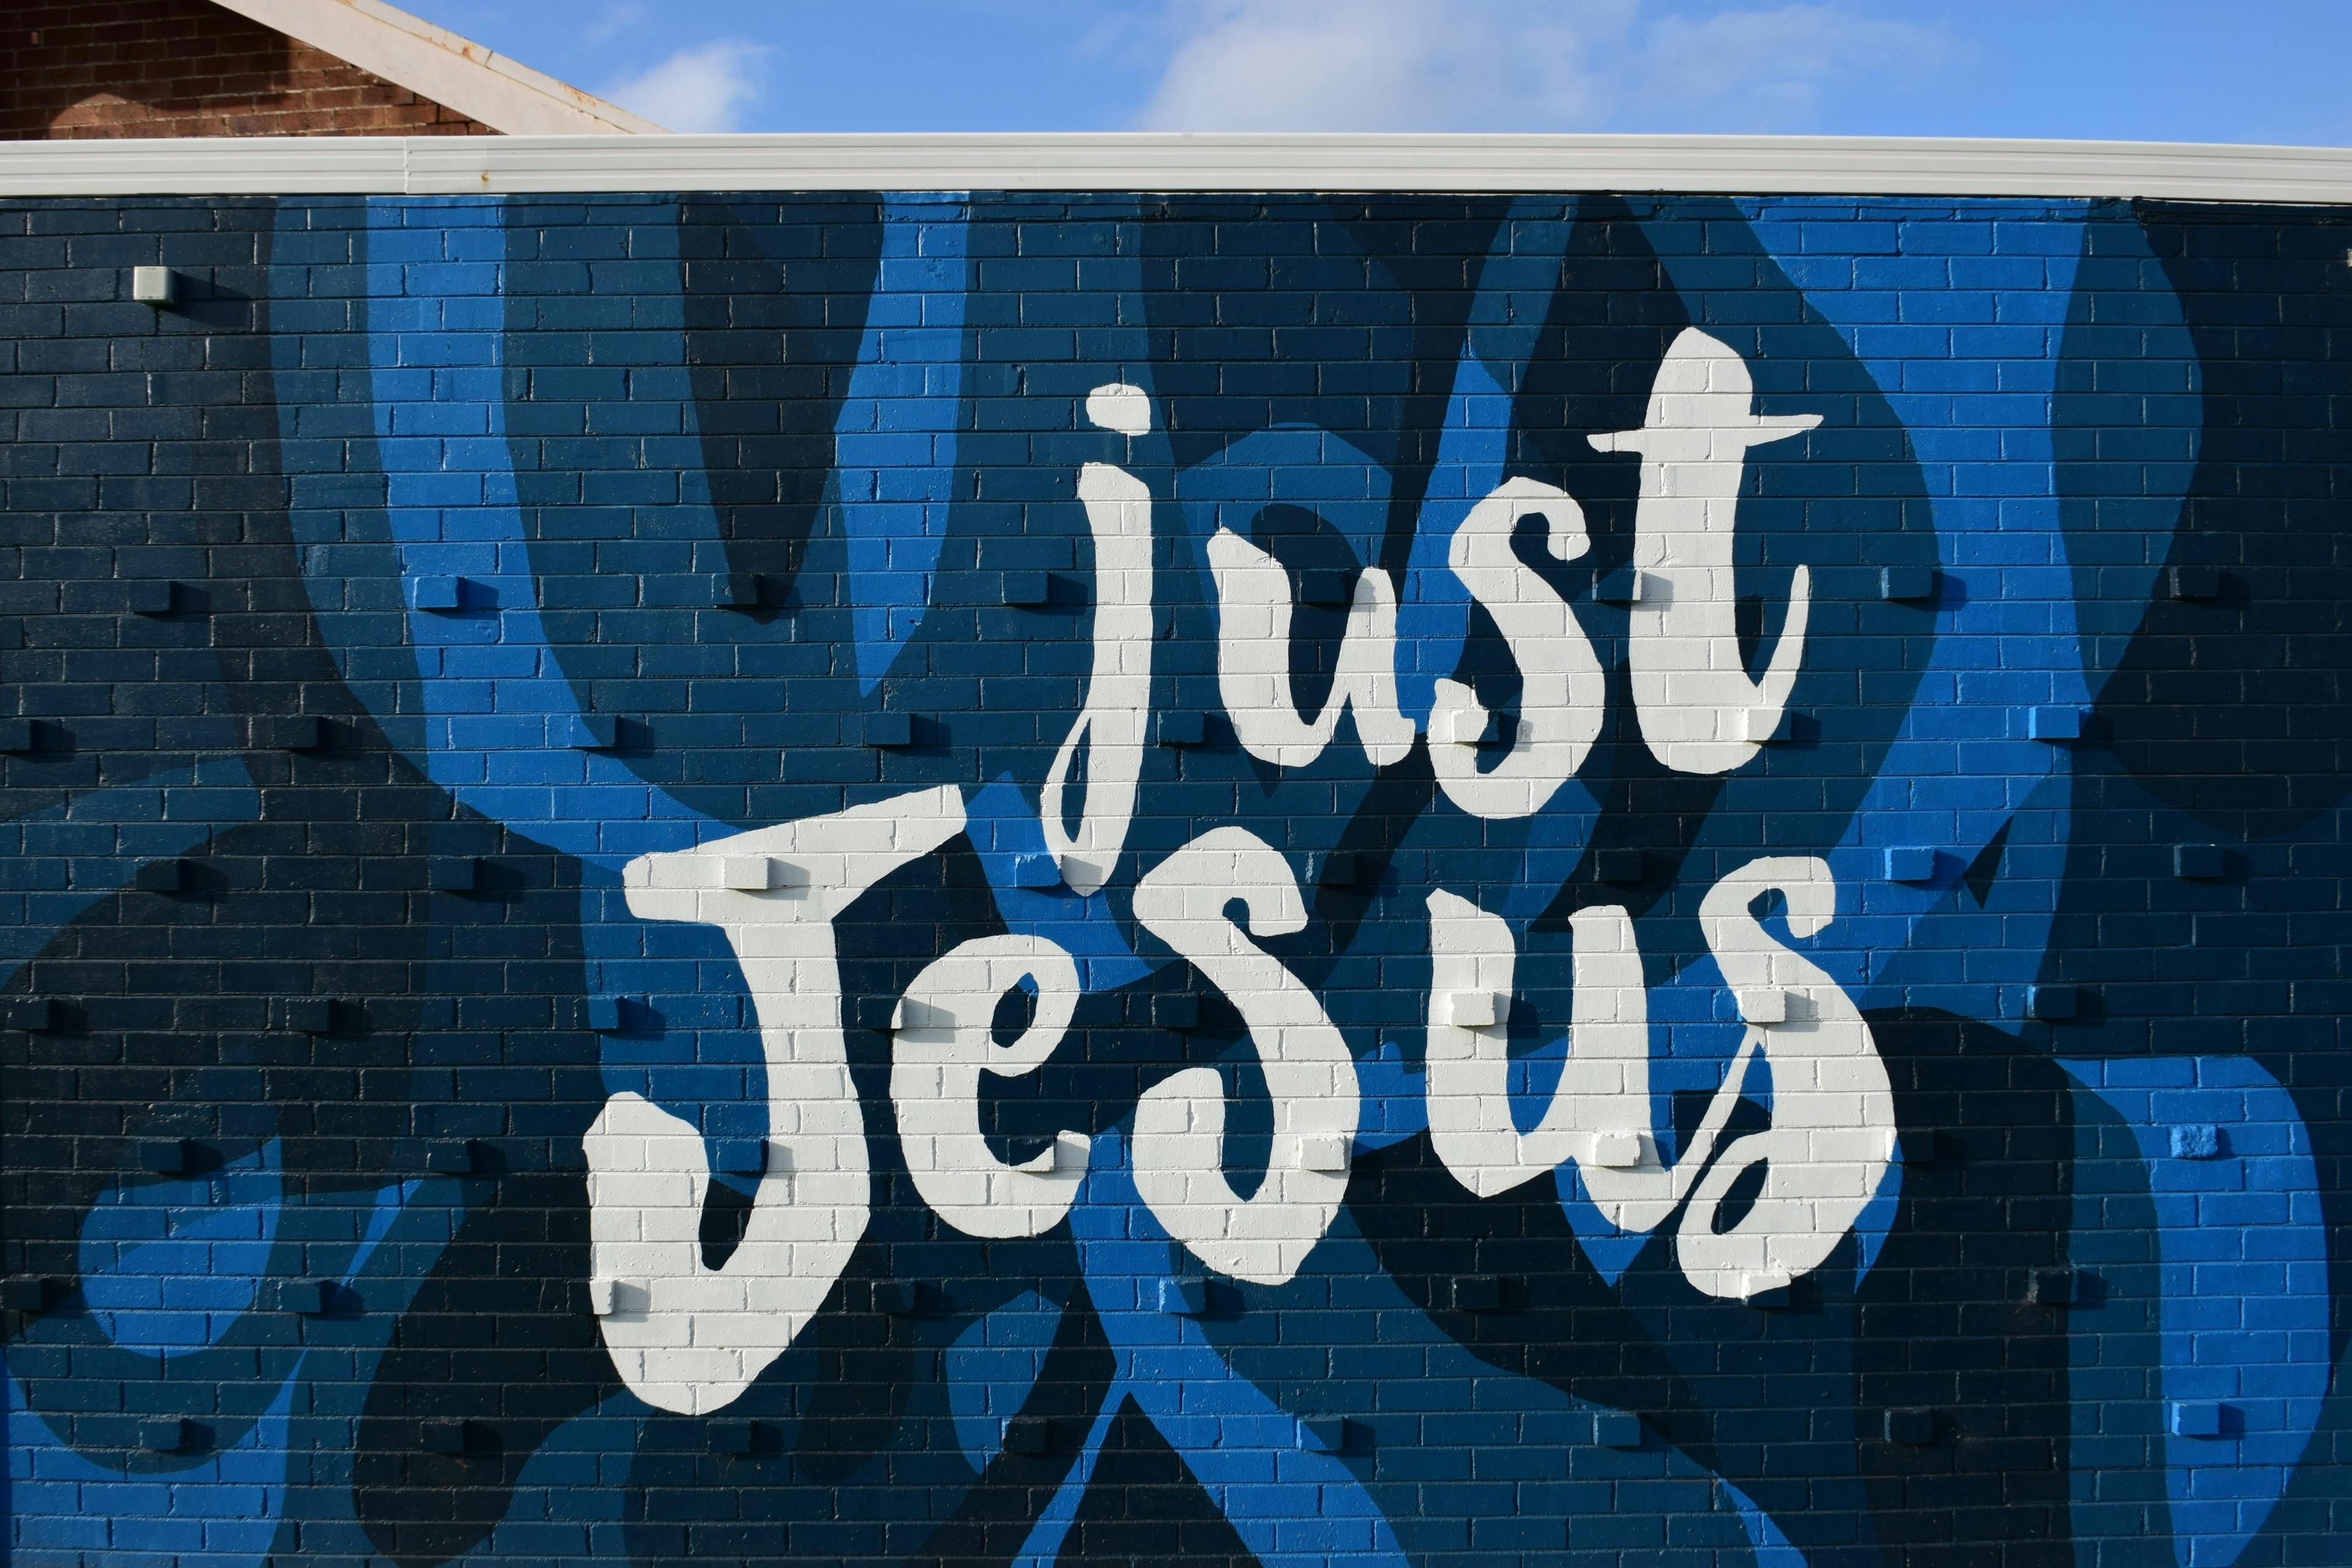 Just Jesus mural